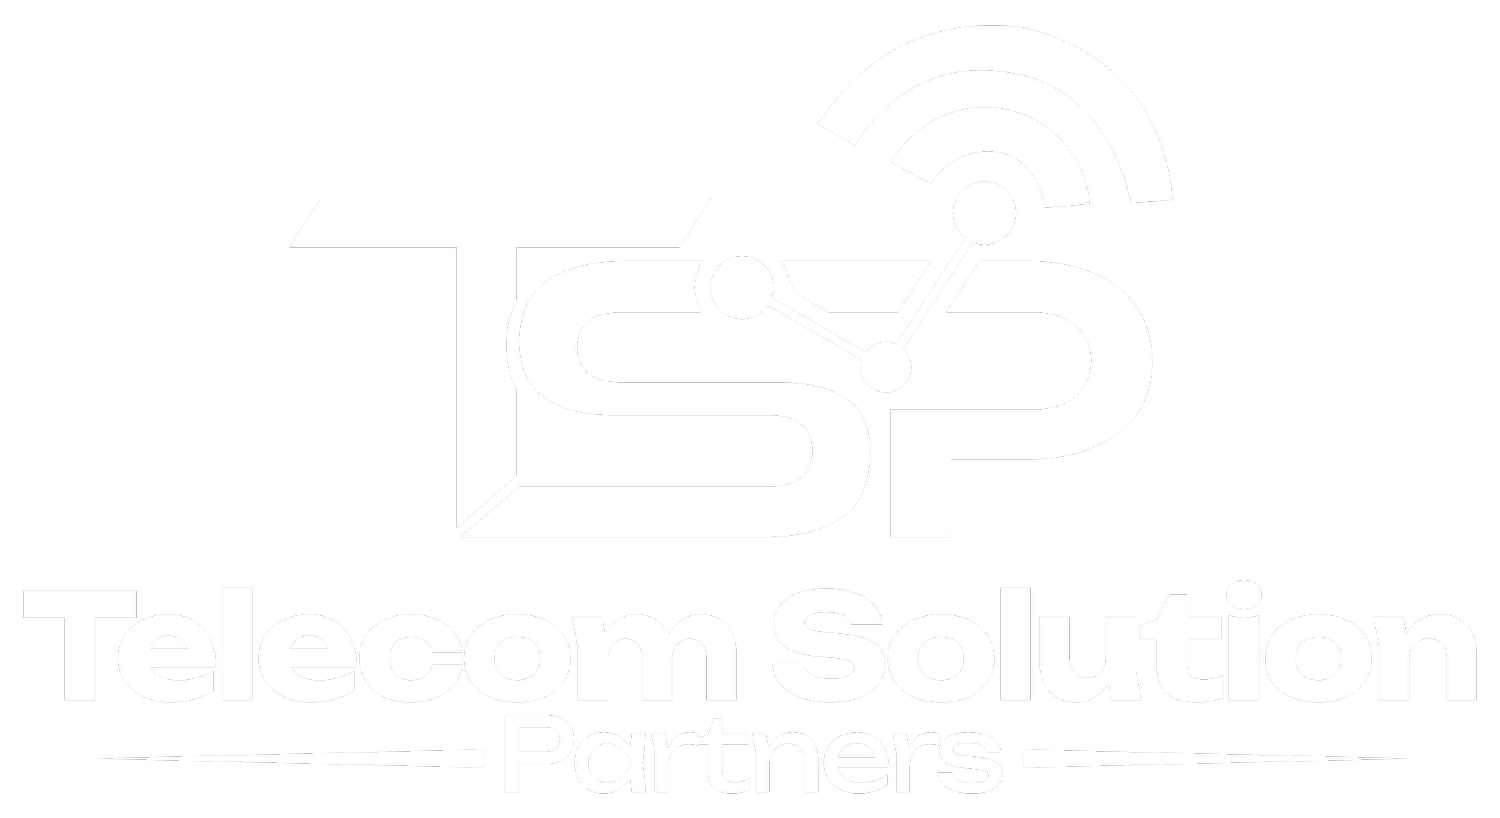 Telecom Solution Partners